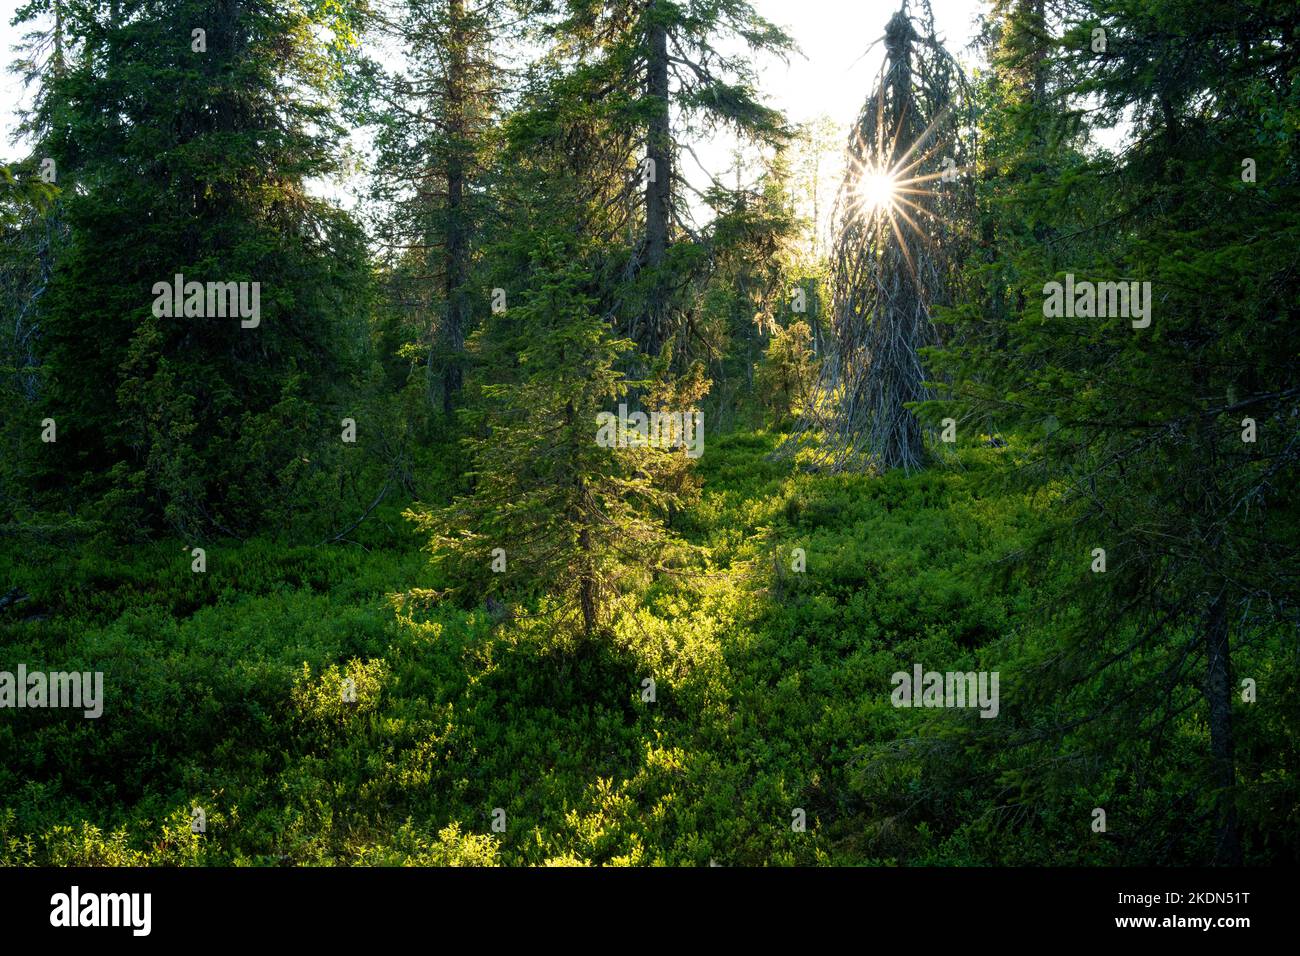 Forêt estivale de taïga ancienne croissance dans le parc national de Riisitunturi, dans le nord de la Finlande Banque D'Images